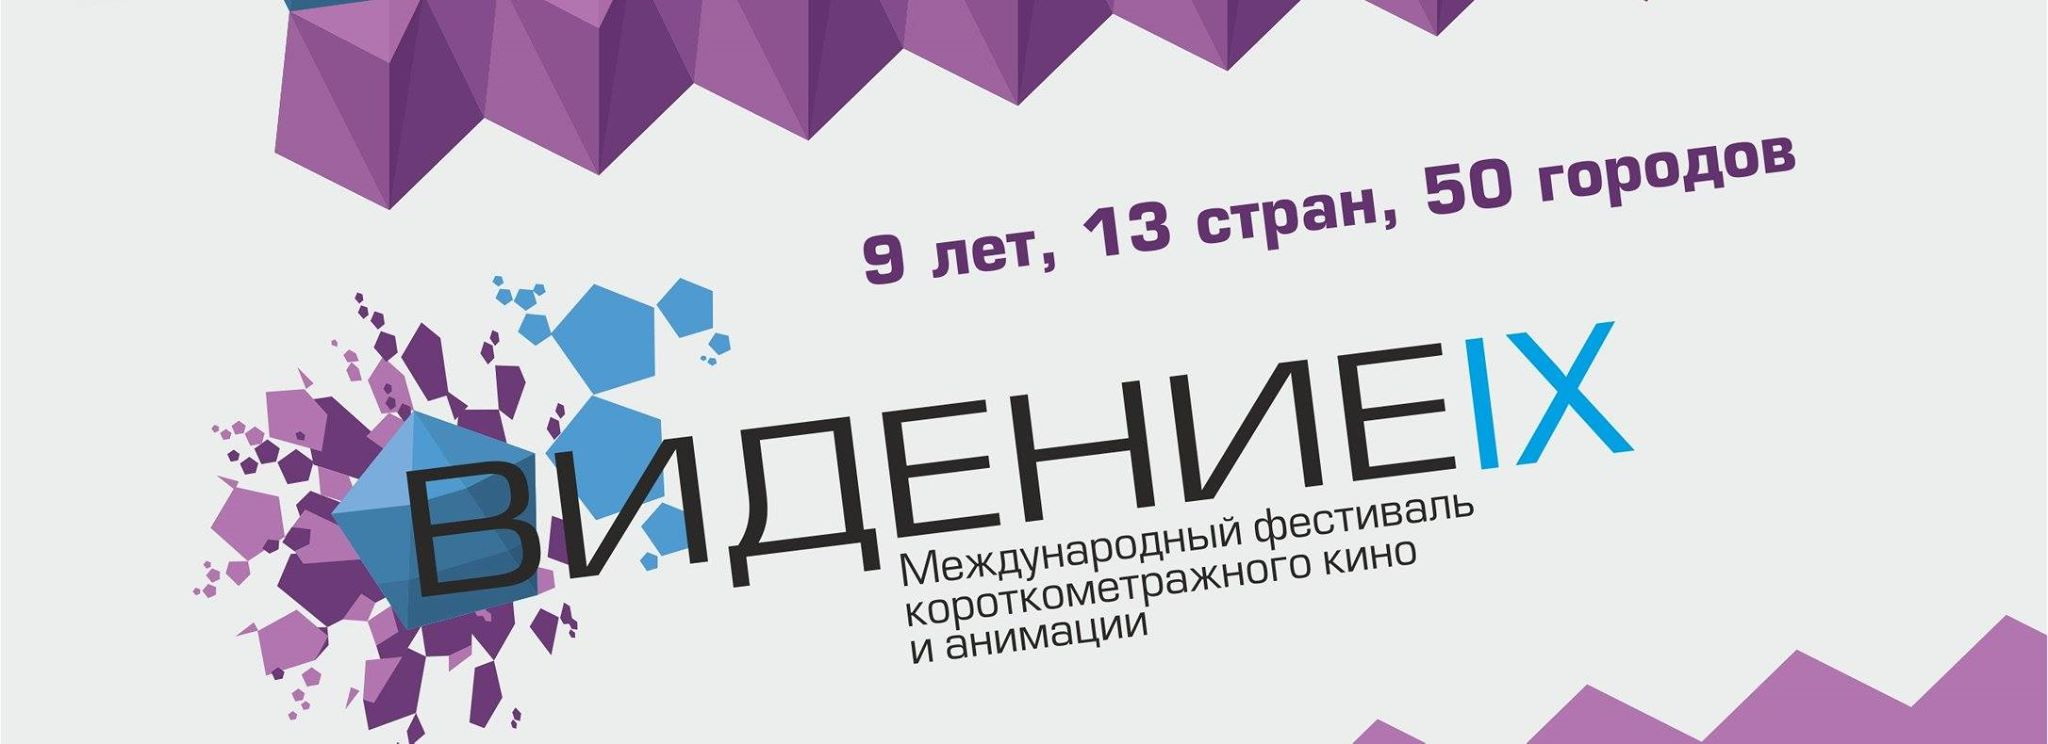 В Кузбассе в девятый раз пройдет международный фестиваль короткометражного кино «Видение»